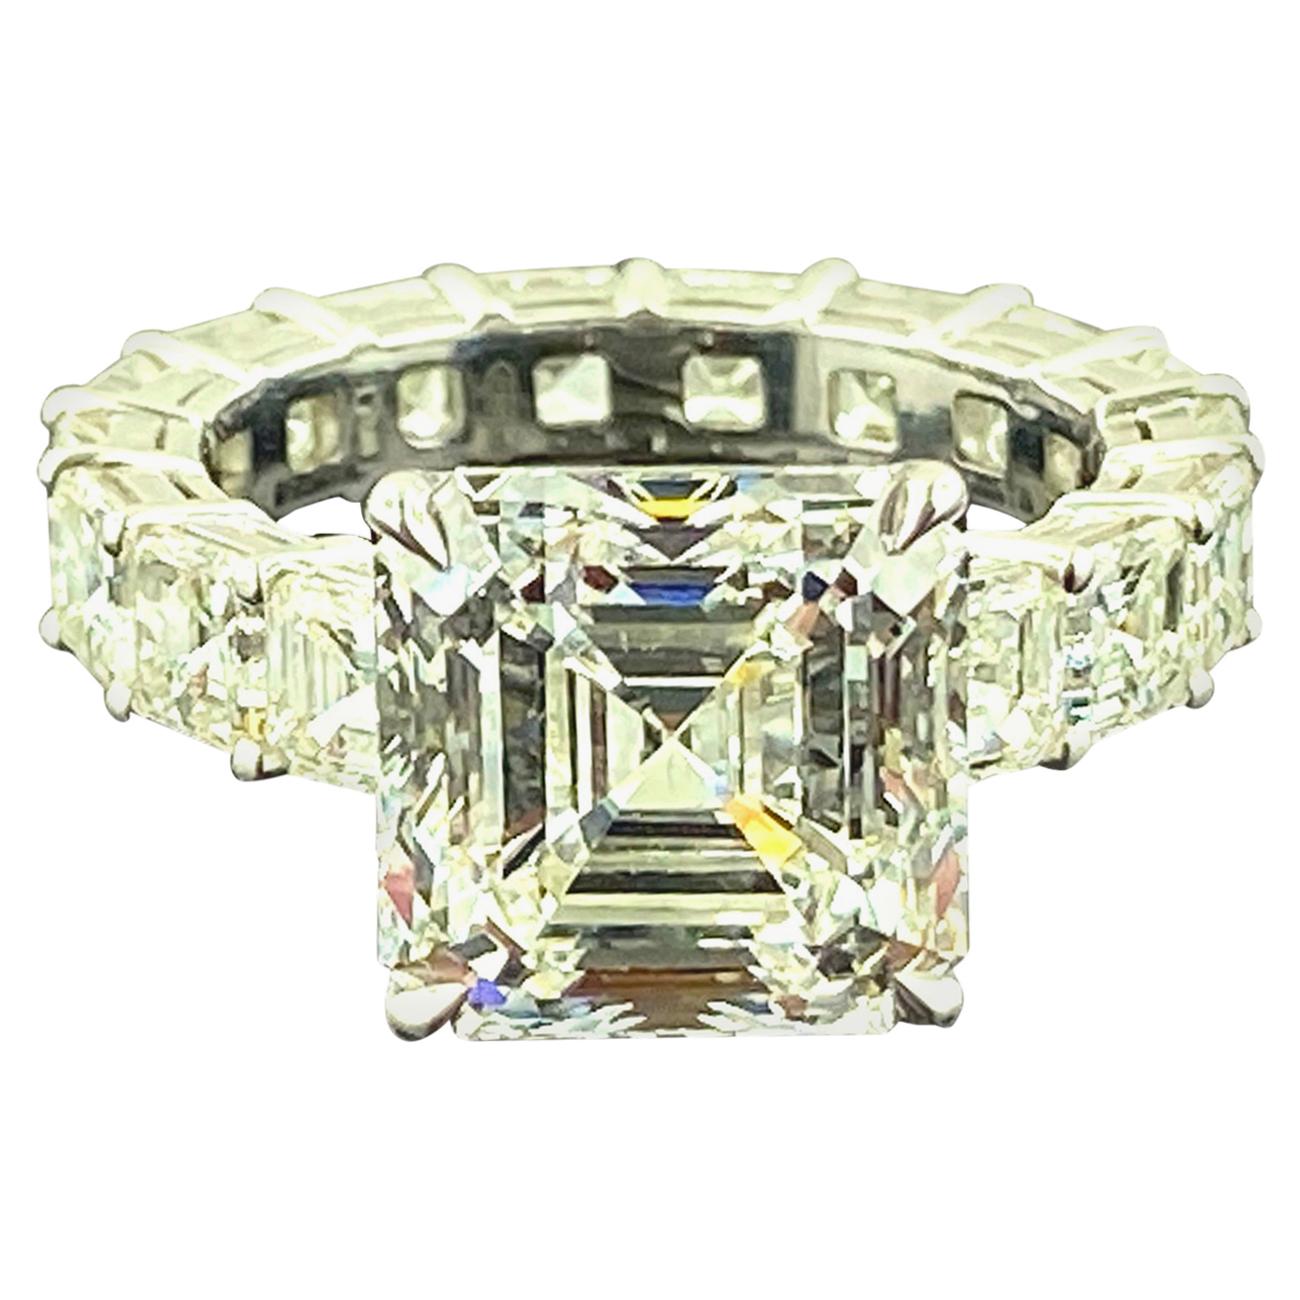 GIA Certified 6.32 Carat Asscher Cut Diamond Engagement Ring